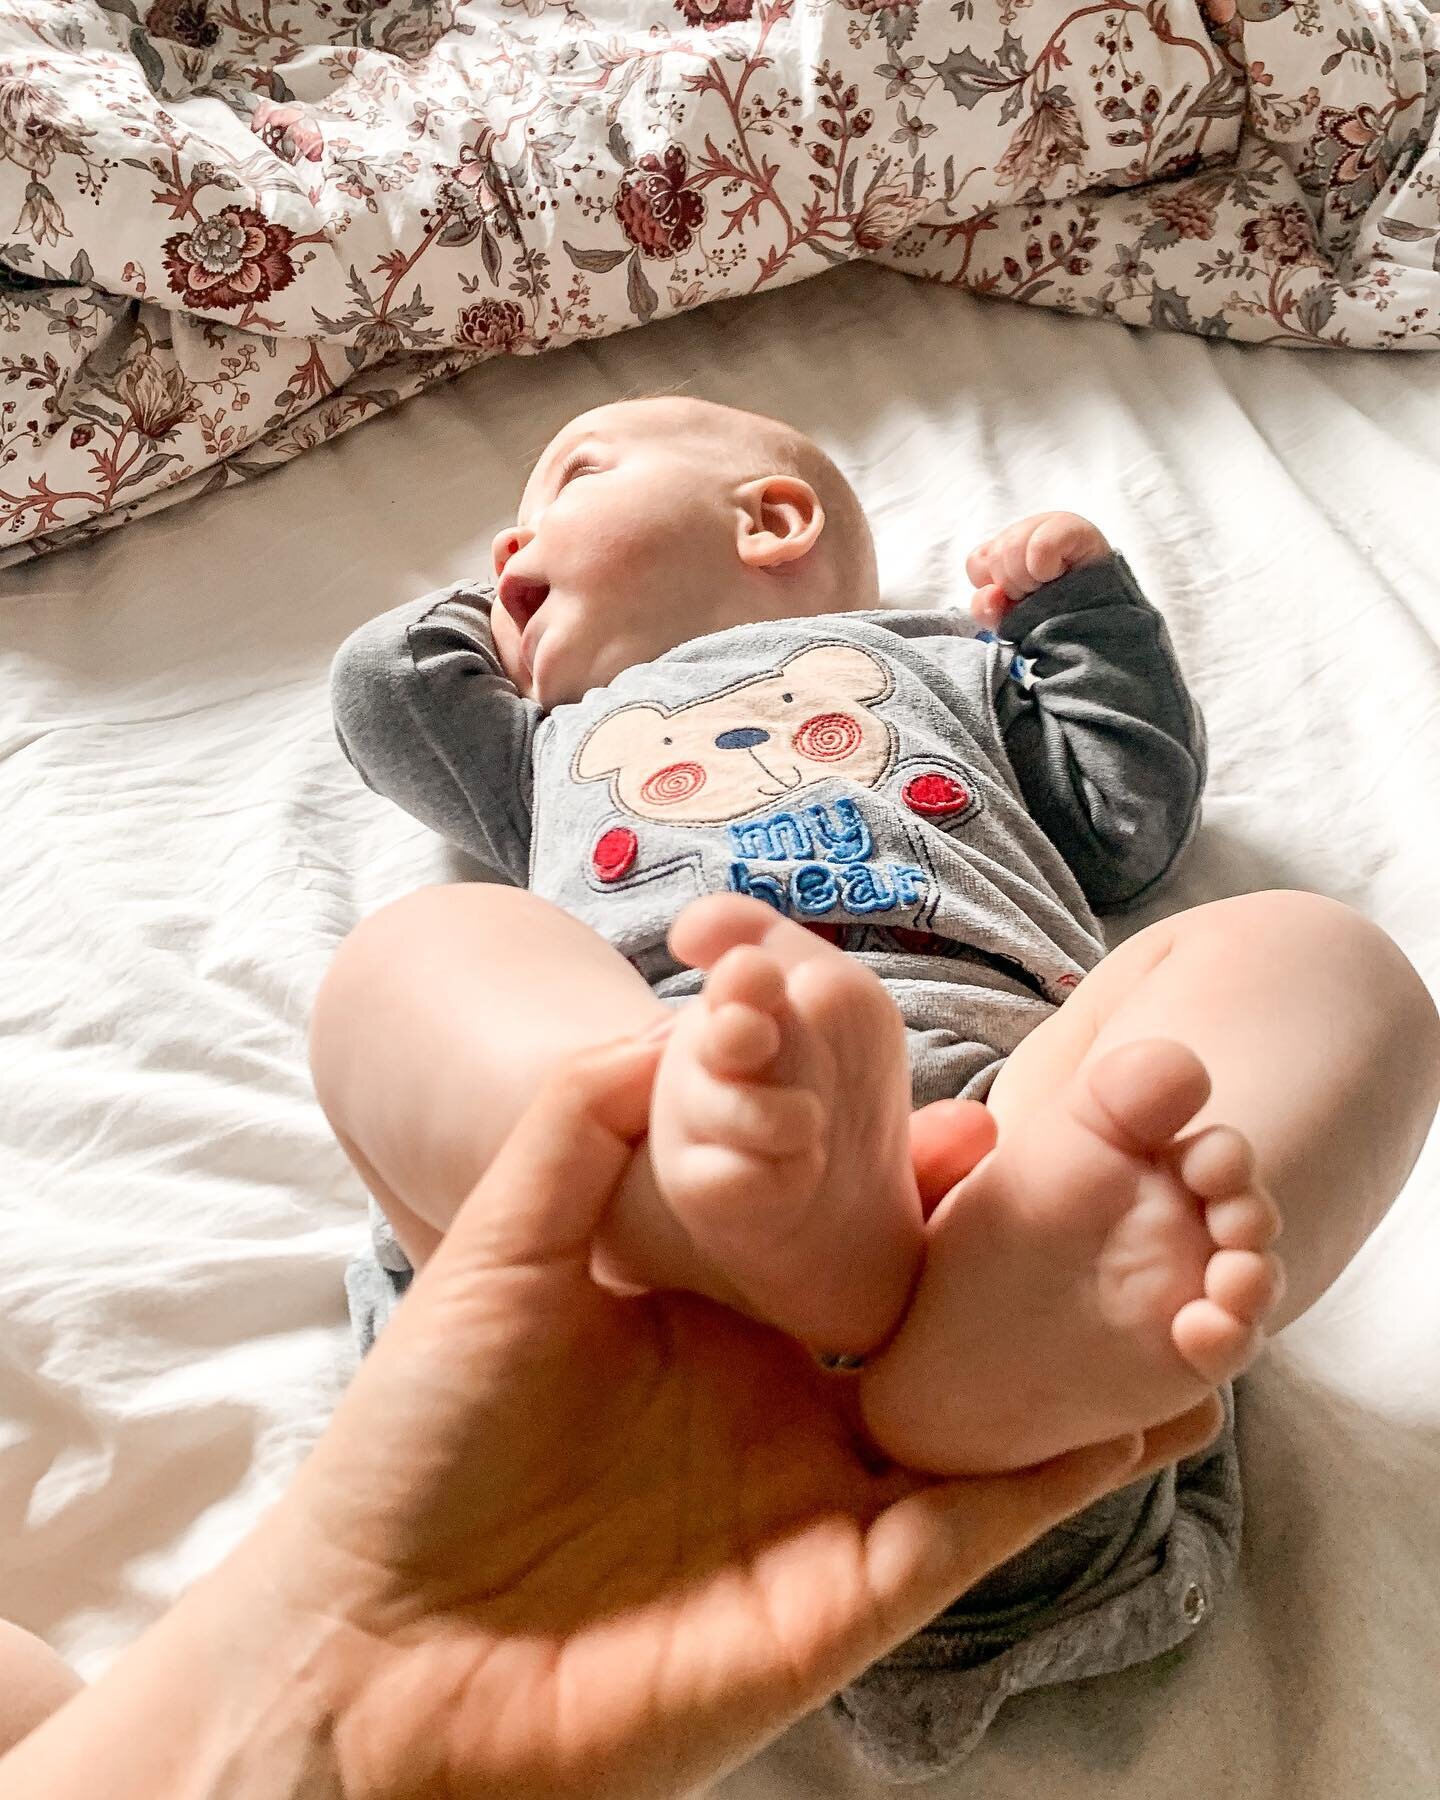 Pielęgnacja paznokci ⭐️

Paznokcie u niemowląt są cienkie i niekiedy ostre. Pierwsze obcinanie paznokci wykonujemy będąc już w domu, aby uniknąć możliwości zakażenia szpitalnymi zarazkami. 
▫️Do pielęgnacji paznokci należy używać nożyczek z zaokrąglo